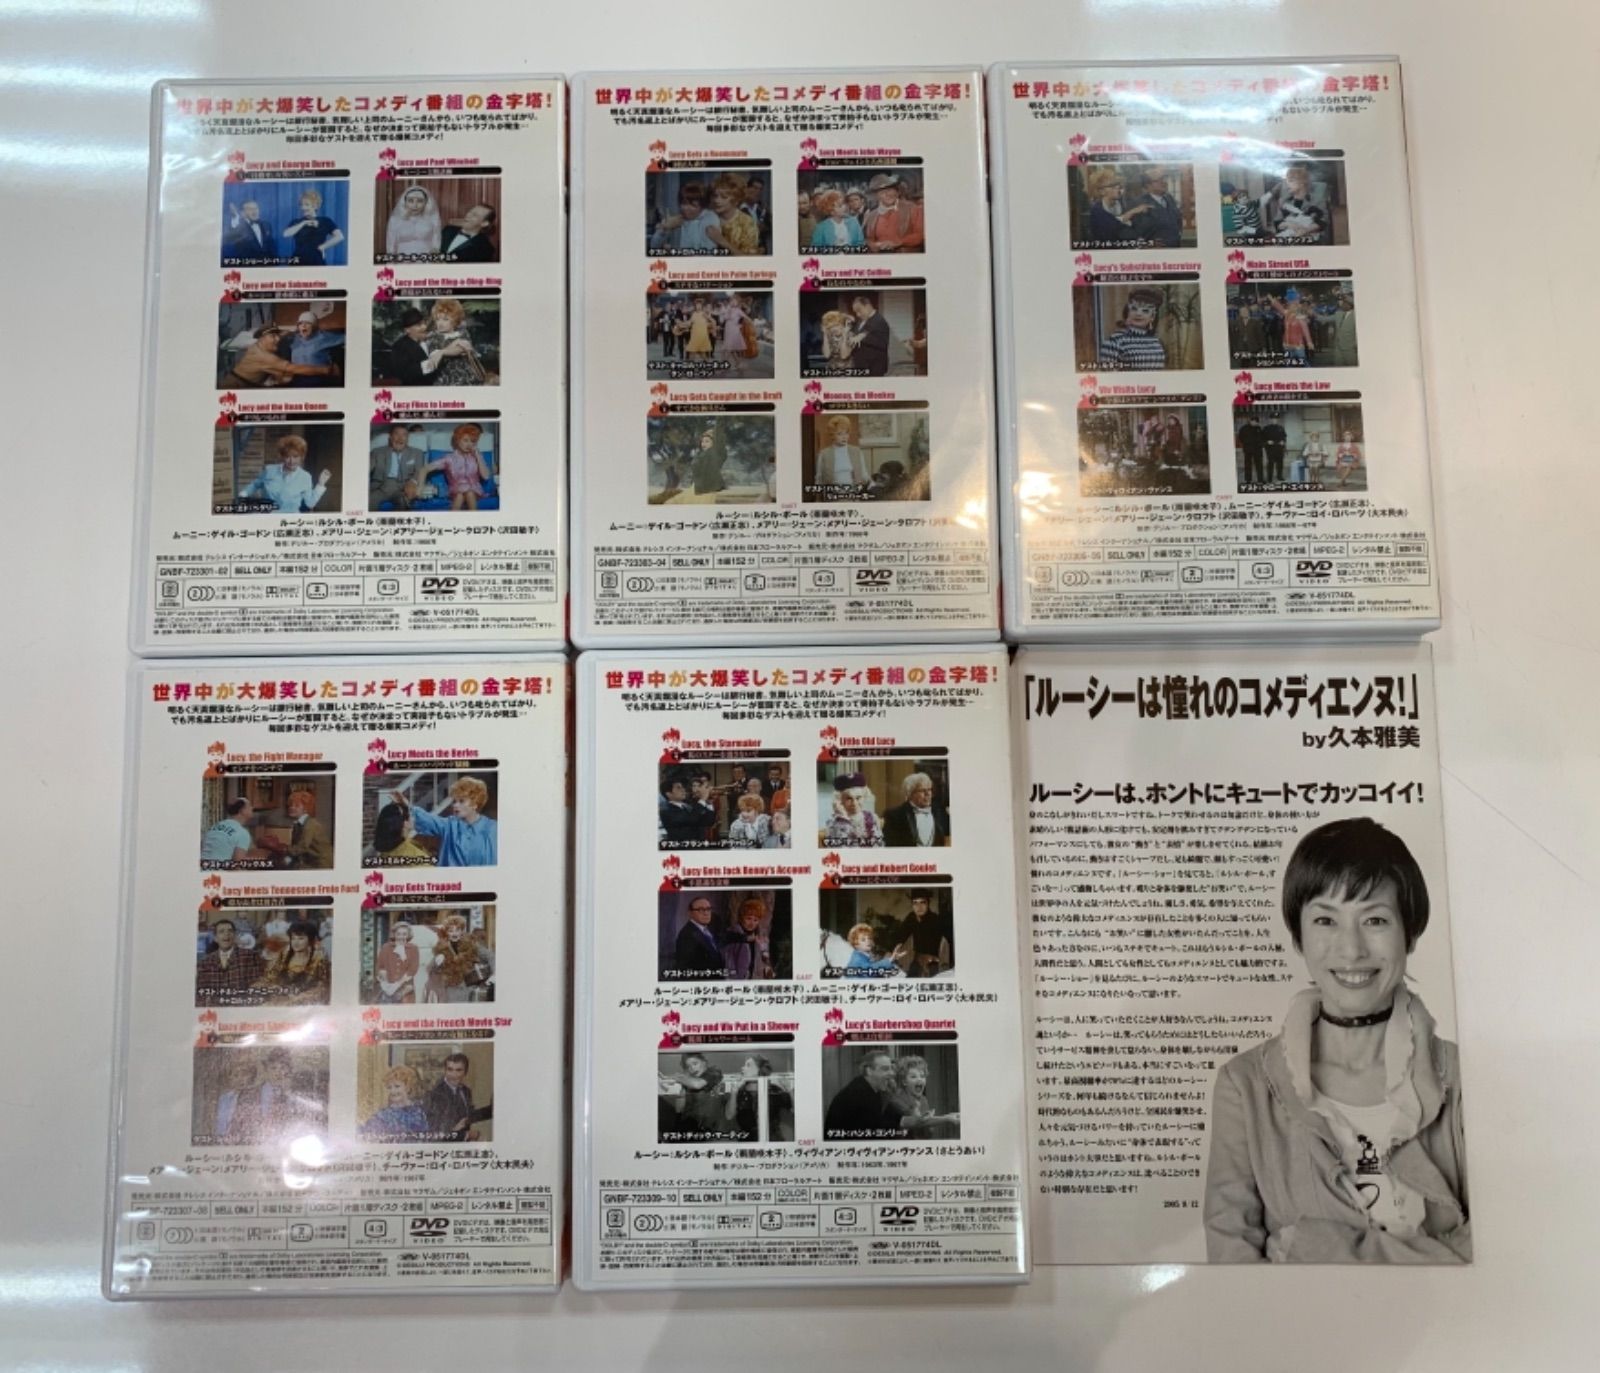 ◇「ルーシー・ショー」DVD-BOX 10枚組 - メルカリ